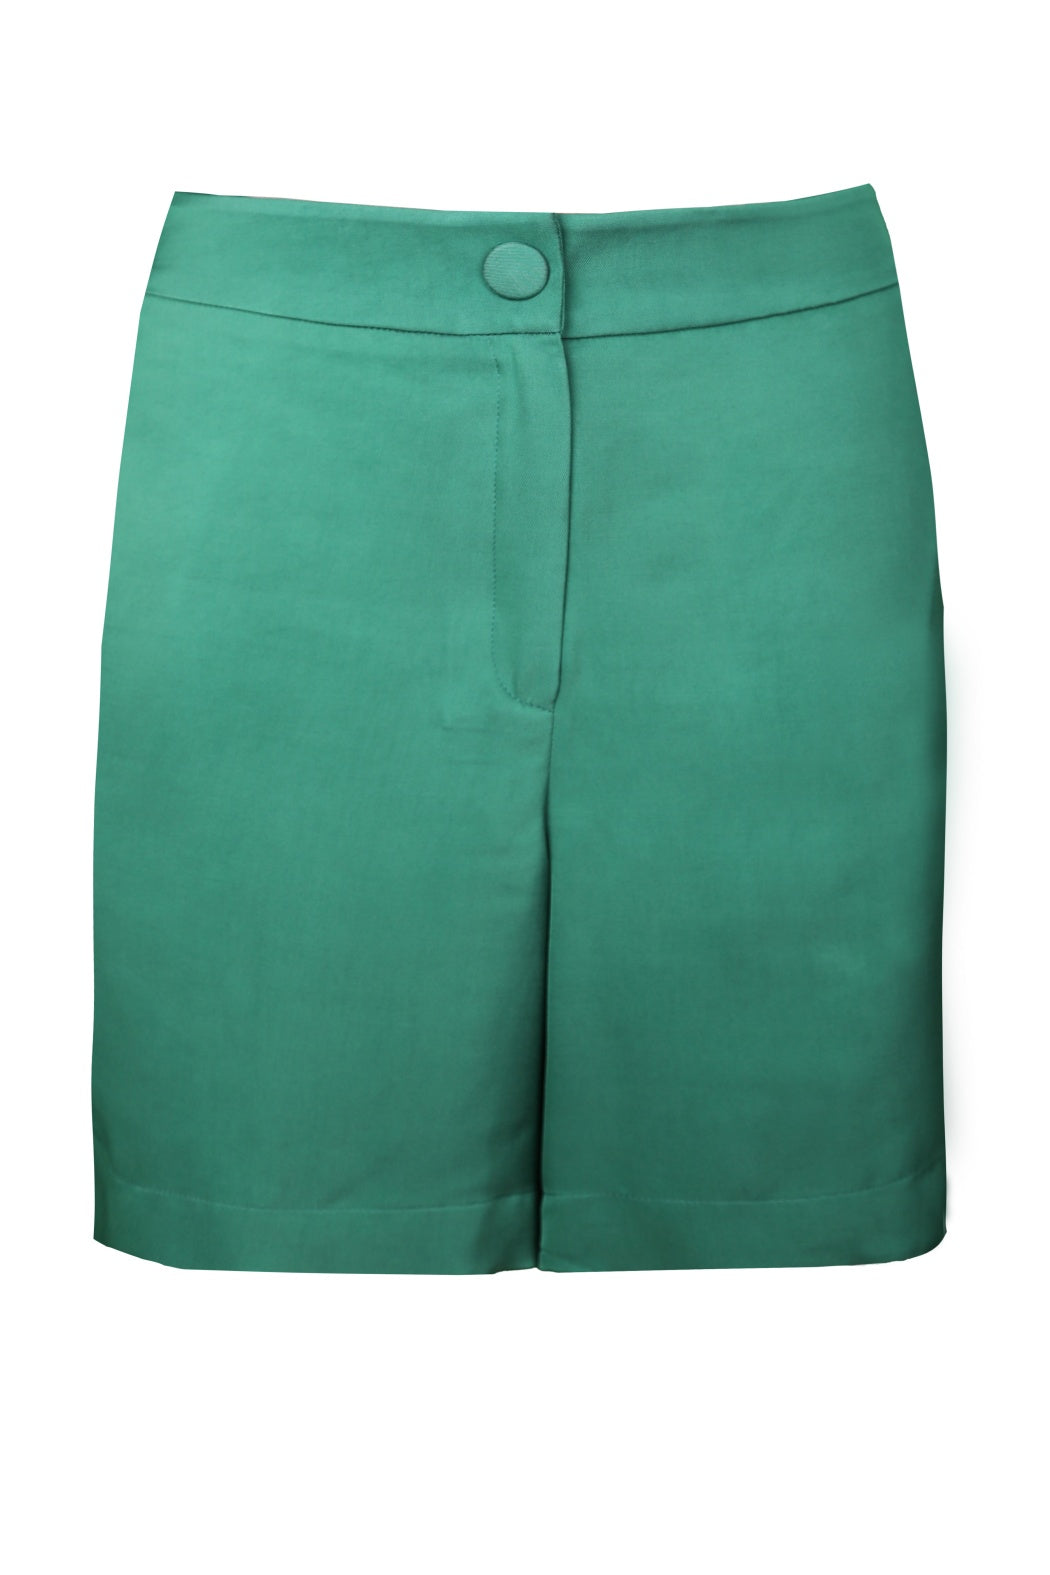 Mabelle Green Viscose Shorts